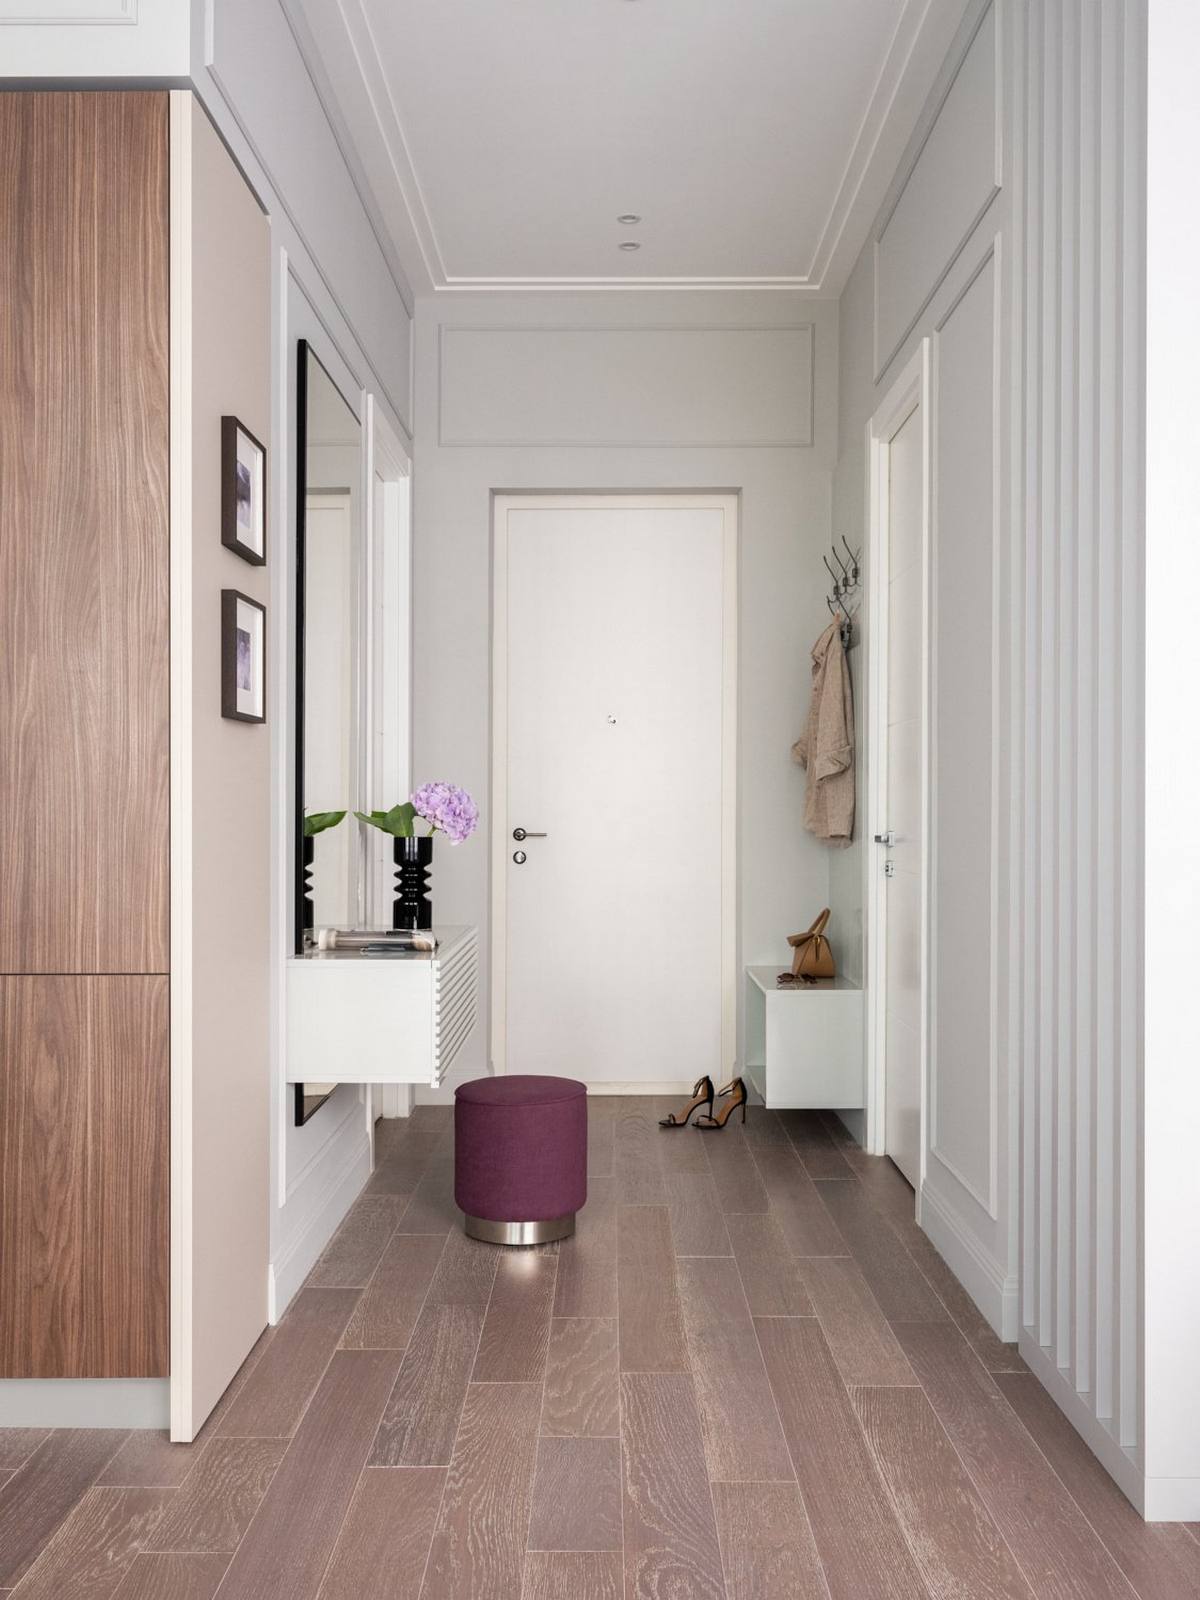 Lối vào căn hộ xinh đẹp với sàn gỗ tự nhiên nhẹ nhàng, chiếc ghế đôn màu tím nổi bật, một góc tường bố trí móc treo áo khoác và tủ đựng giày tiện lợi.